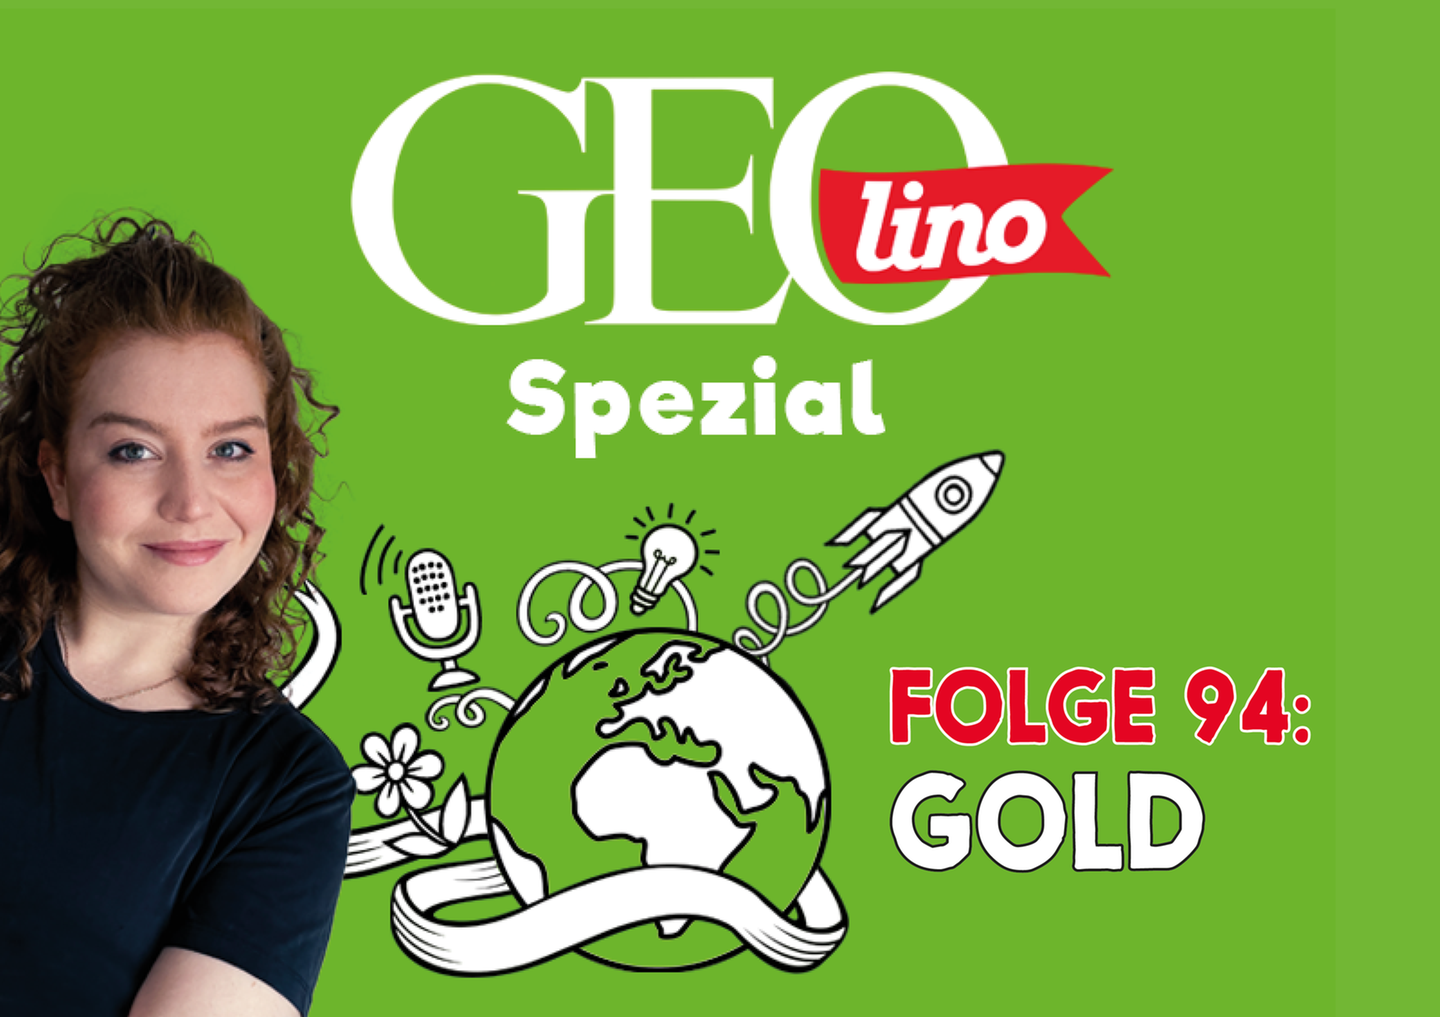 In Folge 94 unseres GEOlino-Podcasts geht es um einen wahren Schatz: Gold.